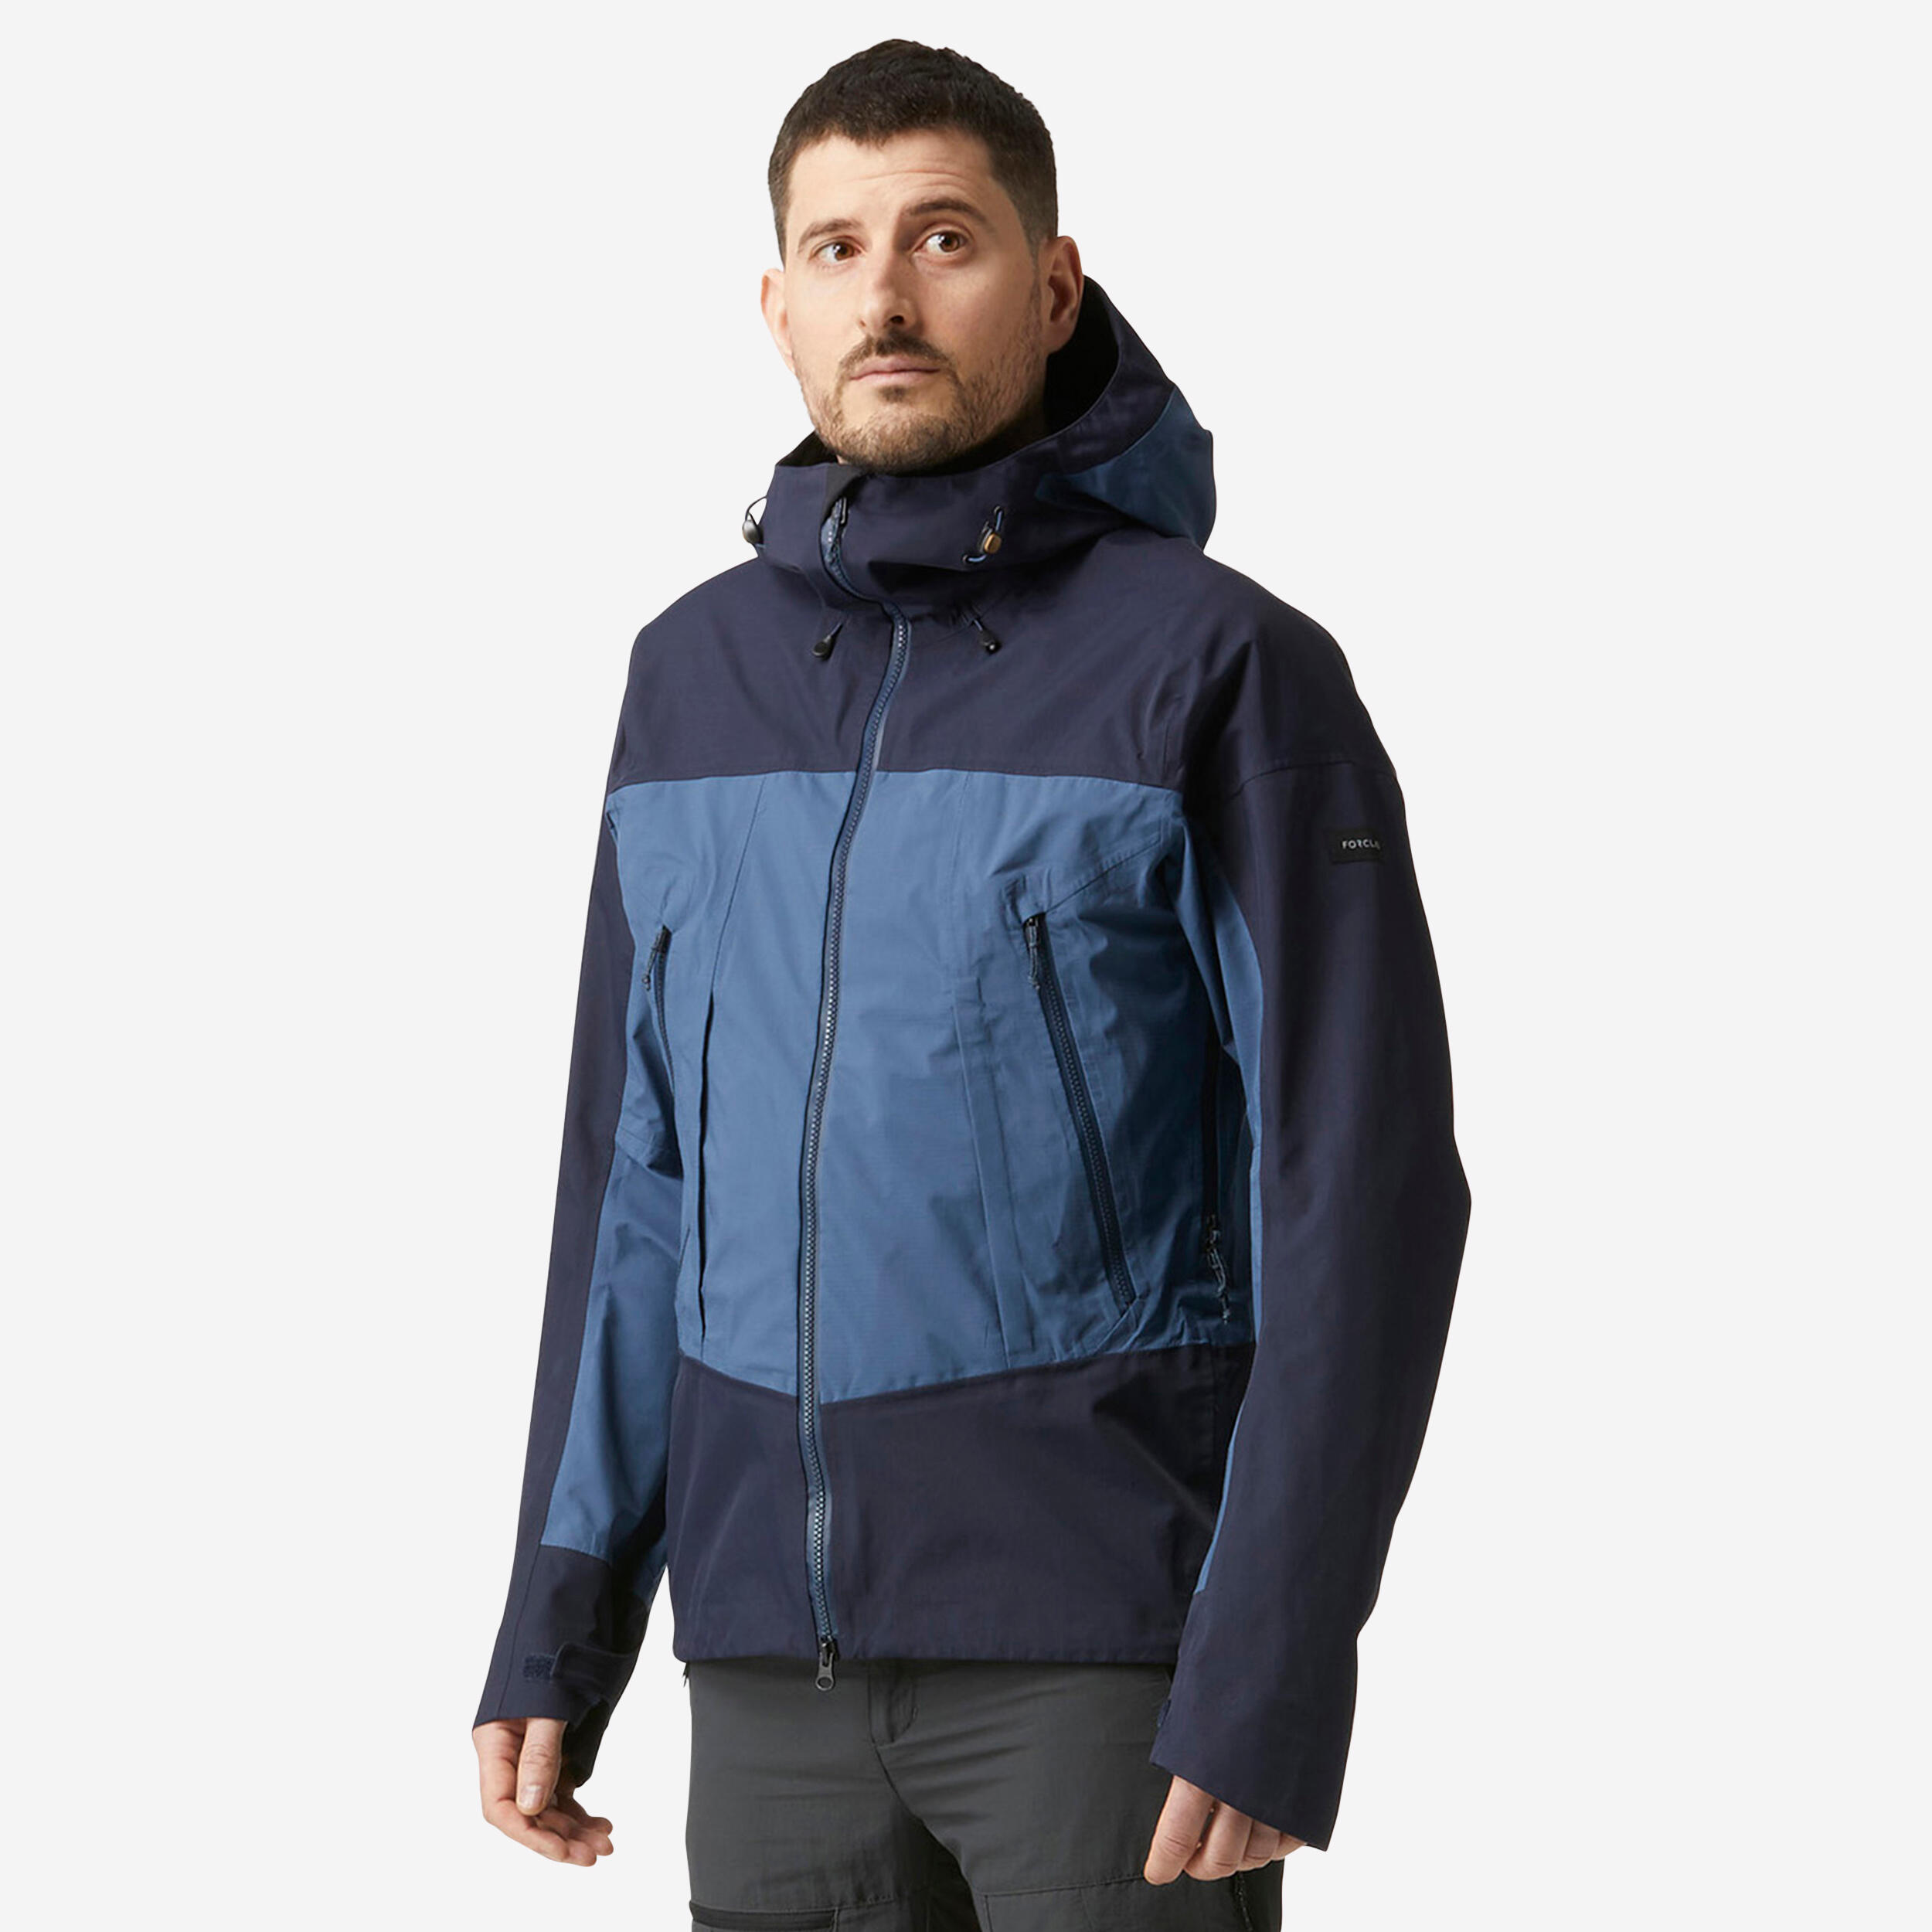 Men’s Waterproof Jacket – 20,000 mm – taped seams - MT500  1/11